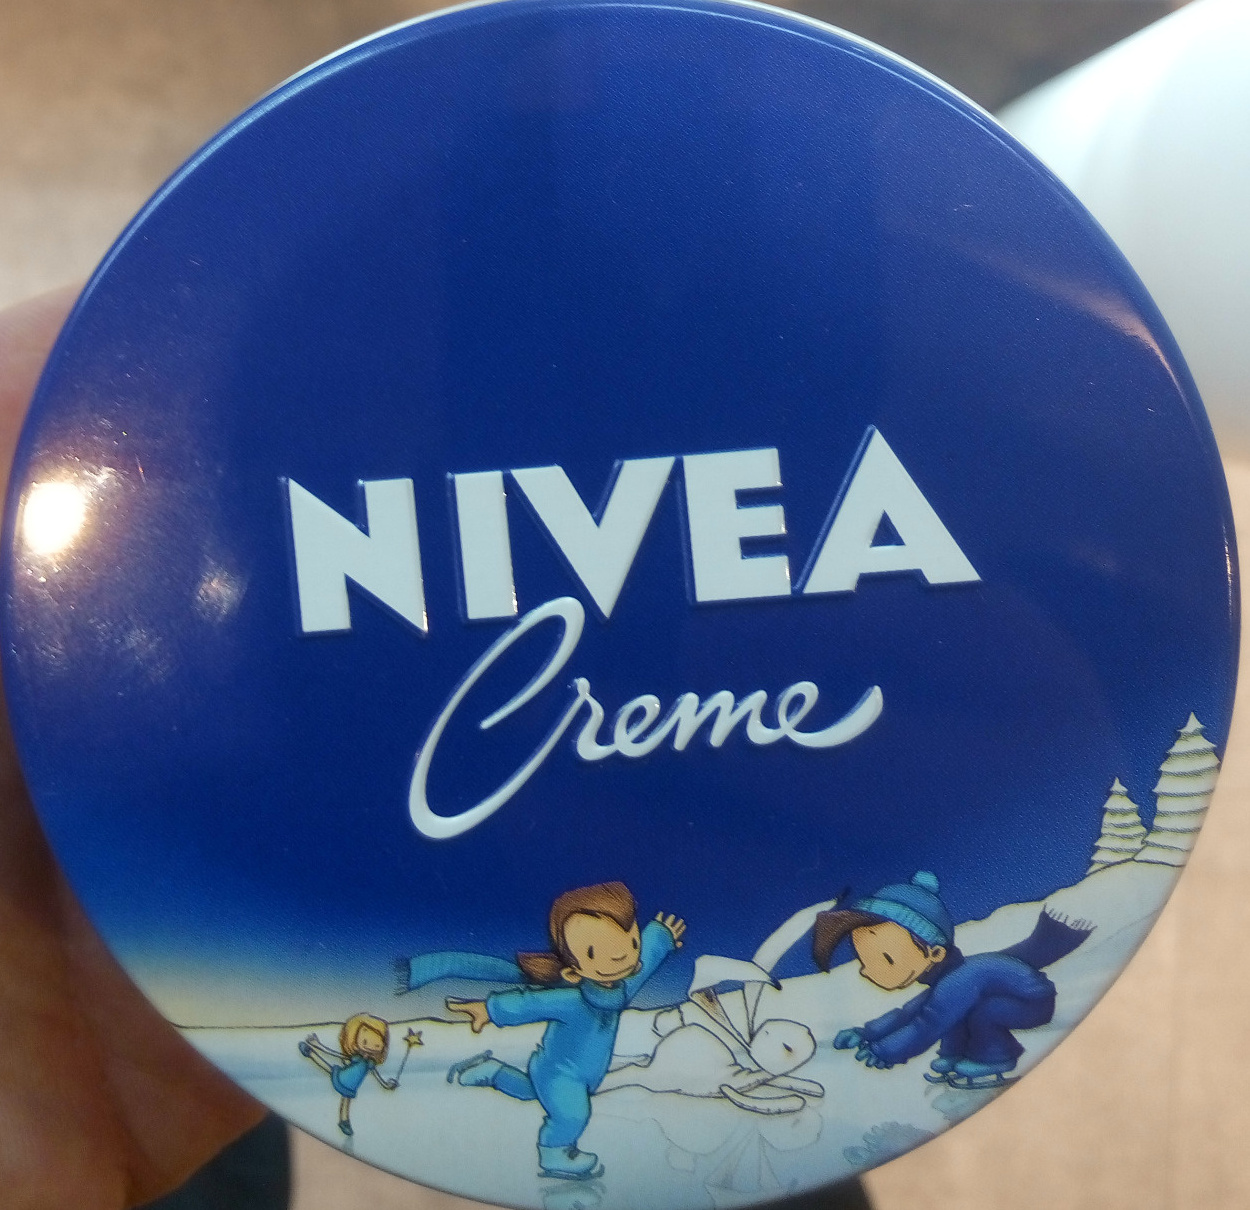 Nivea crème - Product - fr